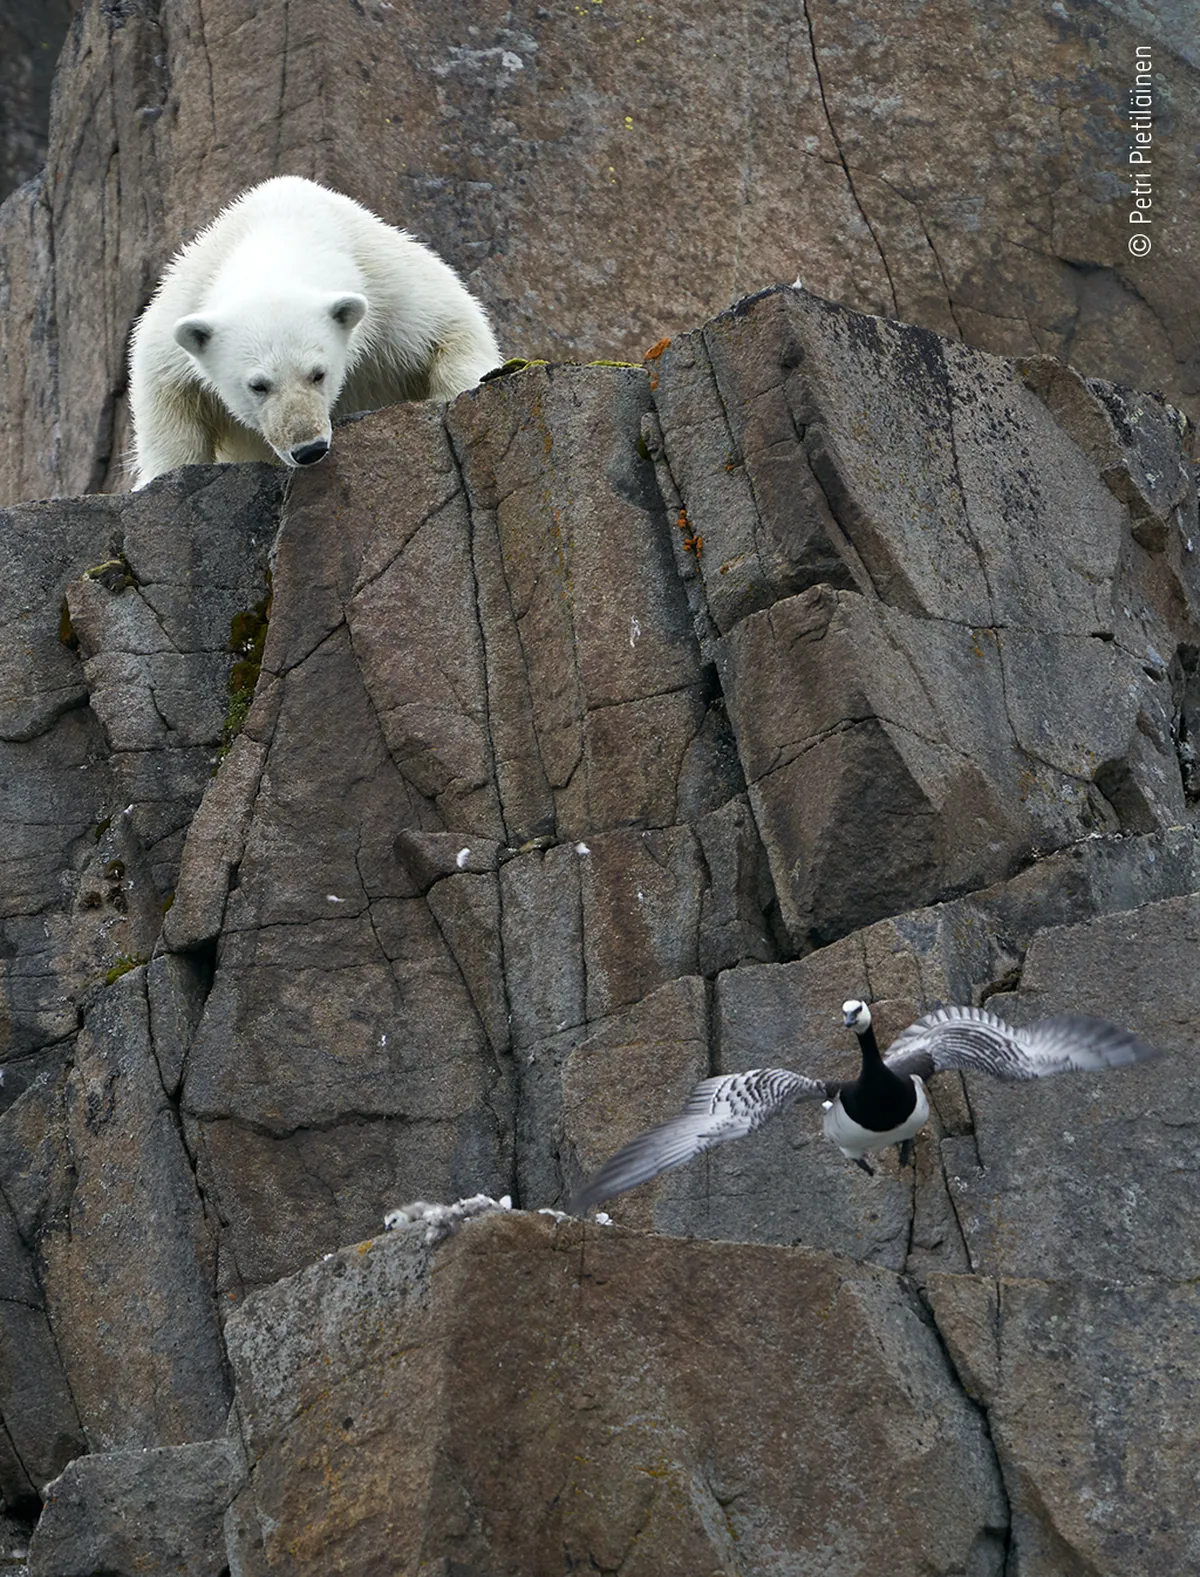 Norvēģijas arhipelāgā Svalbārā leduslācis uzglūn baltvaigu zoss mazuļiem. Izmēģinājis vairākus ceļus pa stāvajām klintīm, lācis tika līdz ligzdai, kur tā ķetnās nonāca aizbēgt nespējīgie putnēni.